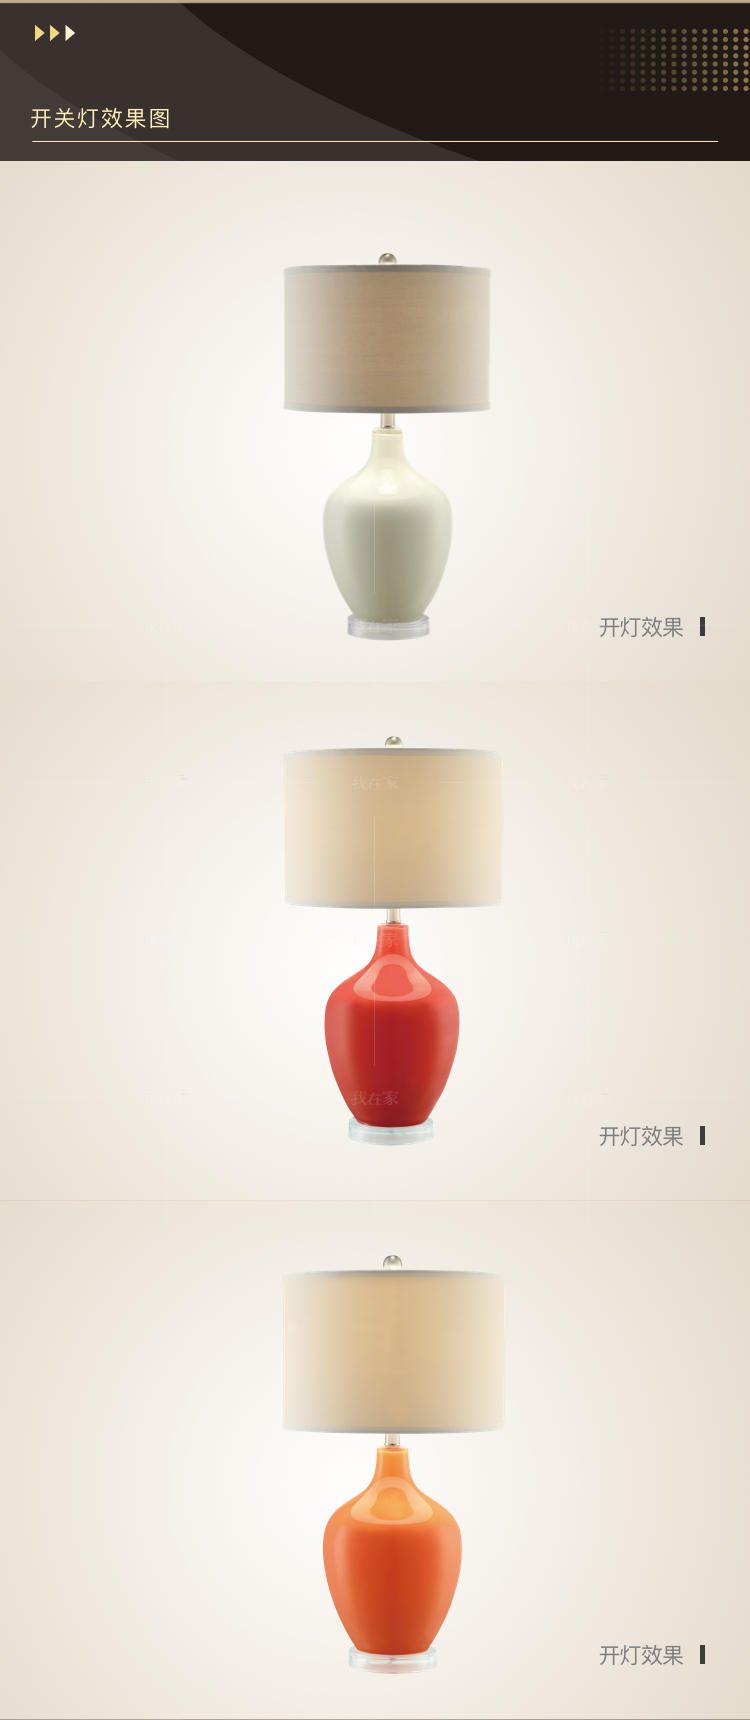 简约美式风格美式布艺床头台灯的家具详细介绍